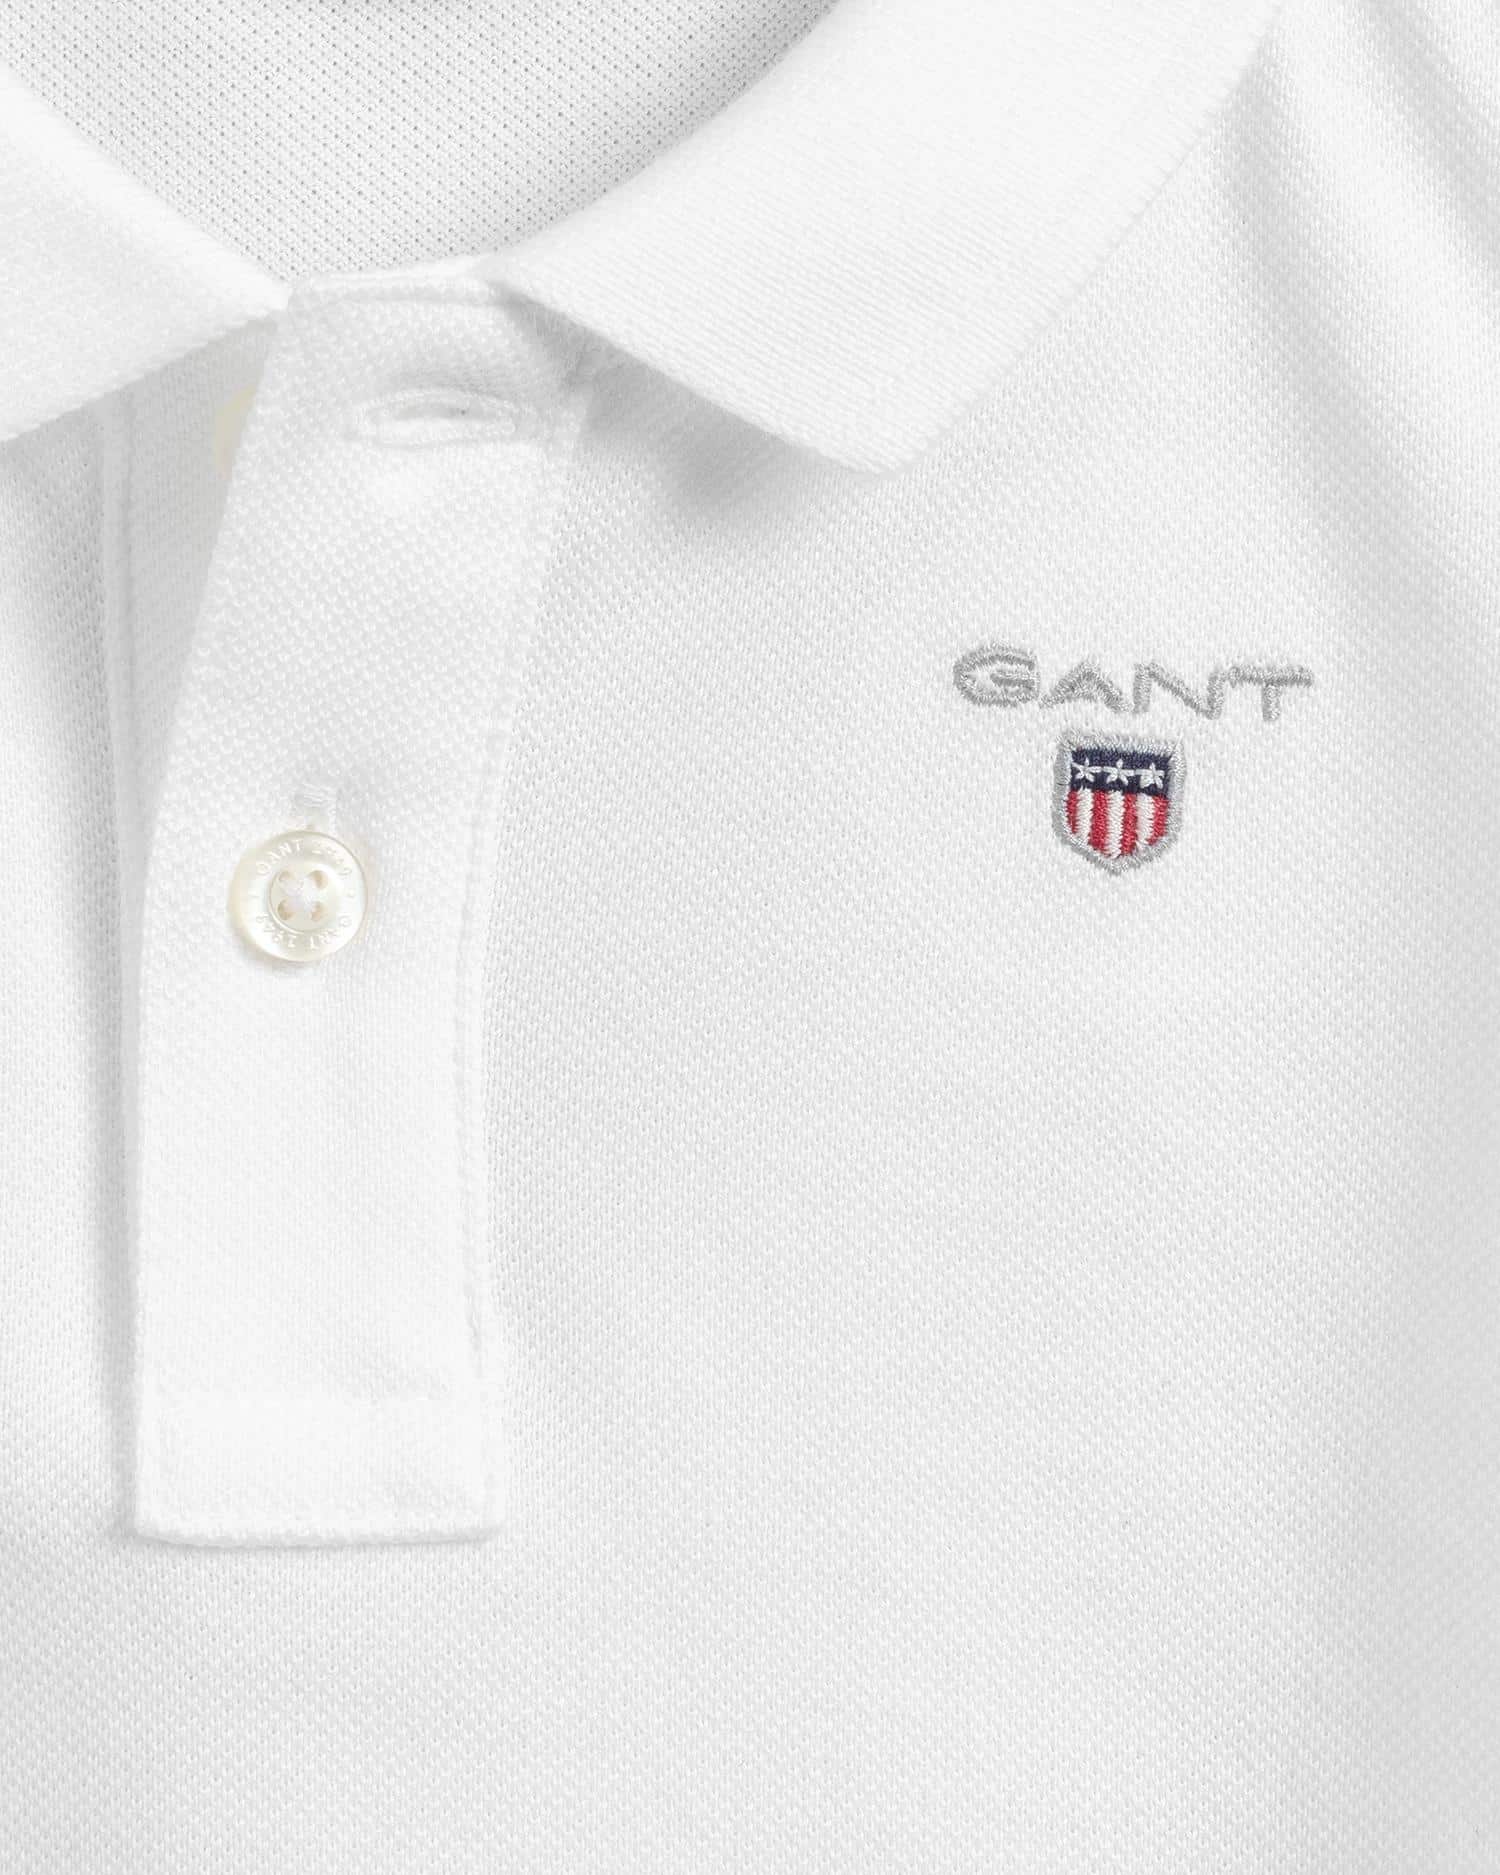 Gant boys white polo shirt with small logo